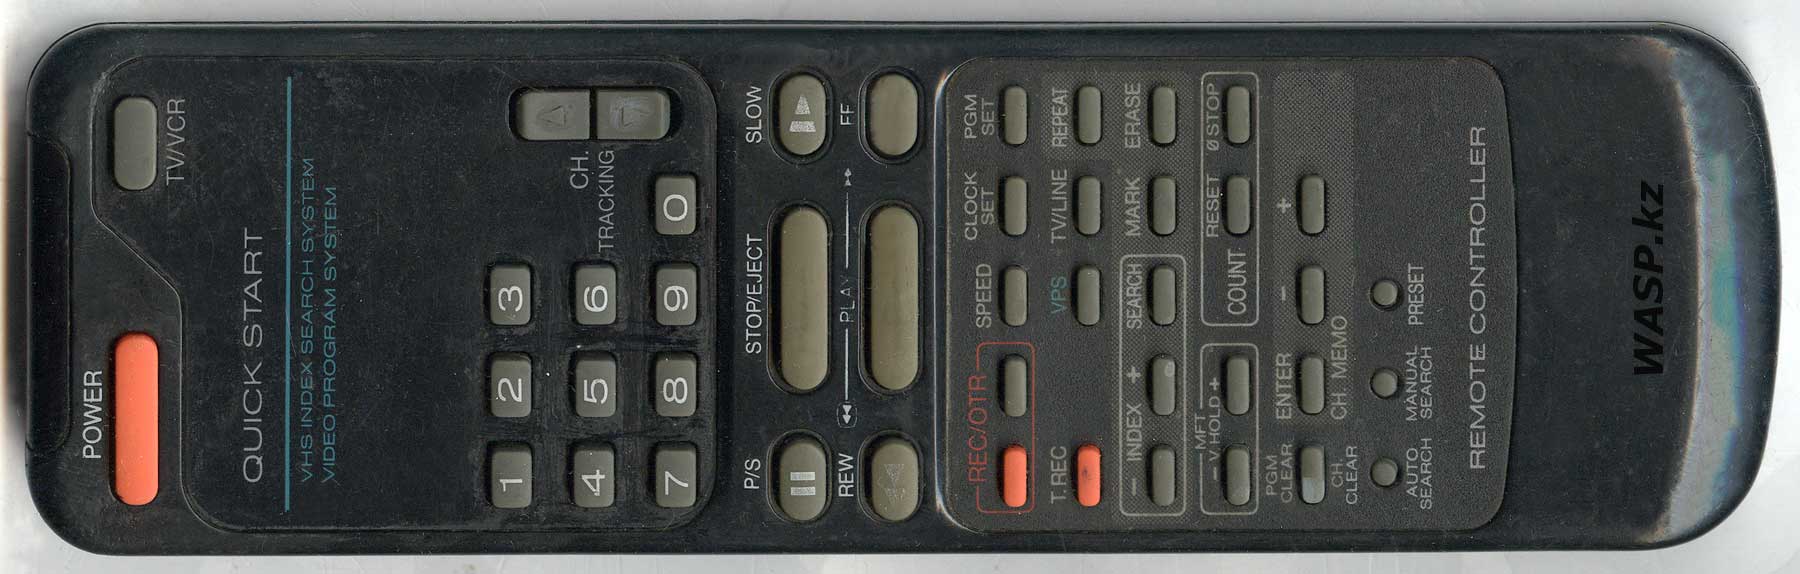 DMB3523VR обзор ПДУ от видеомагнитофона 1990-х годов